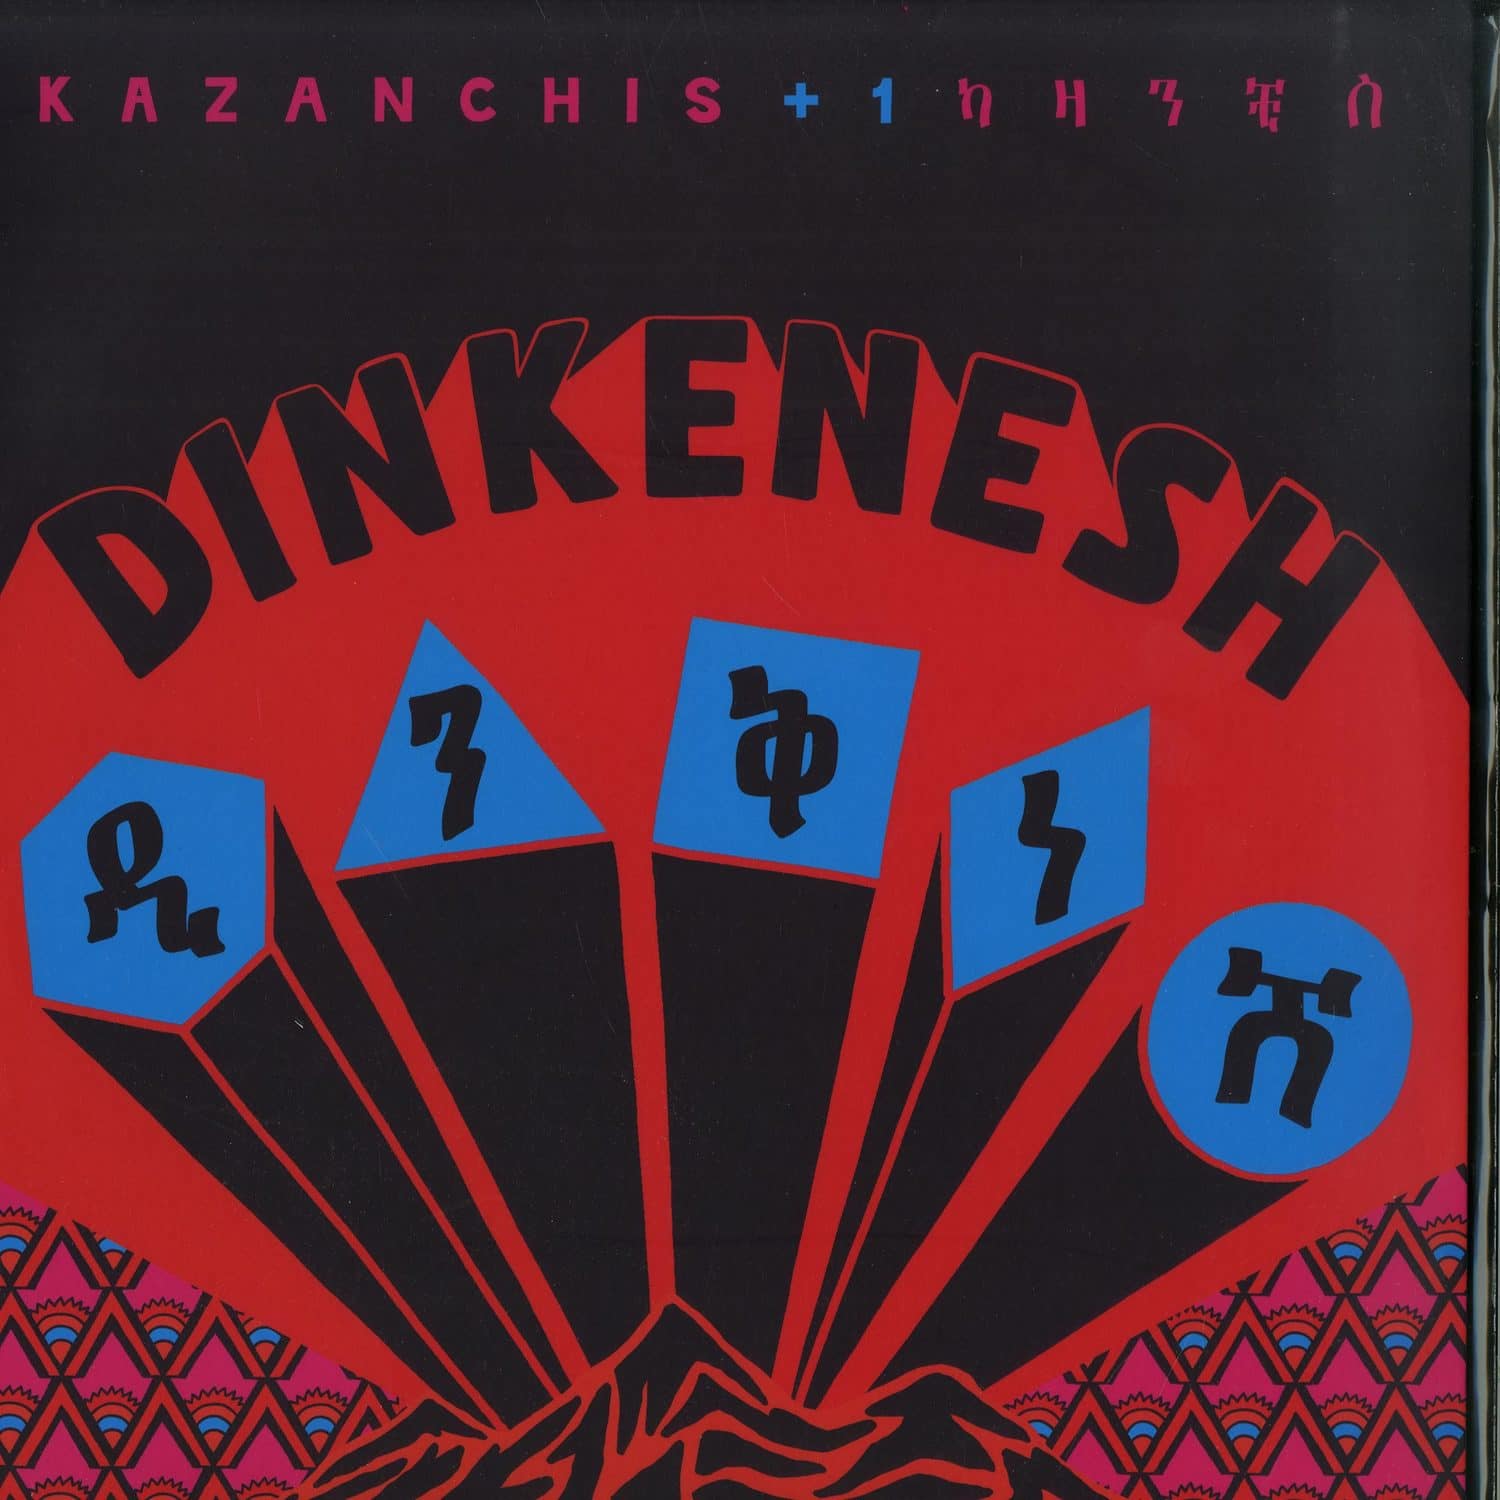 Kazanchis + 1 - DINKENESH